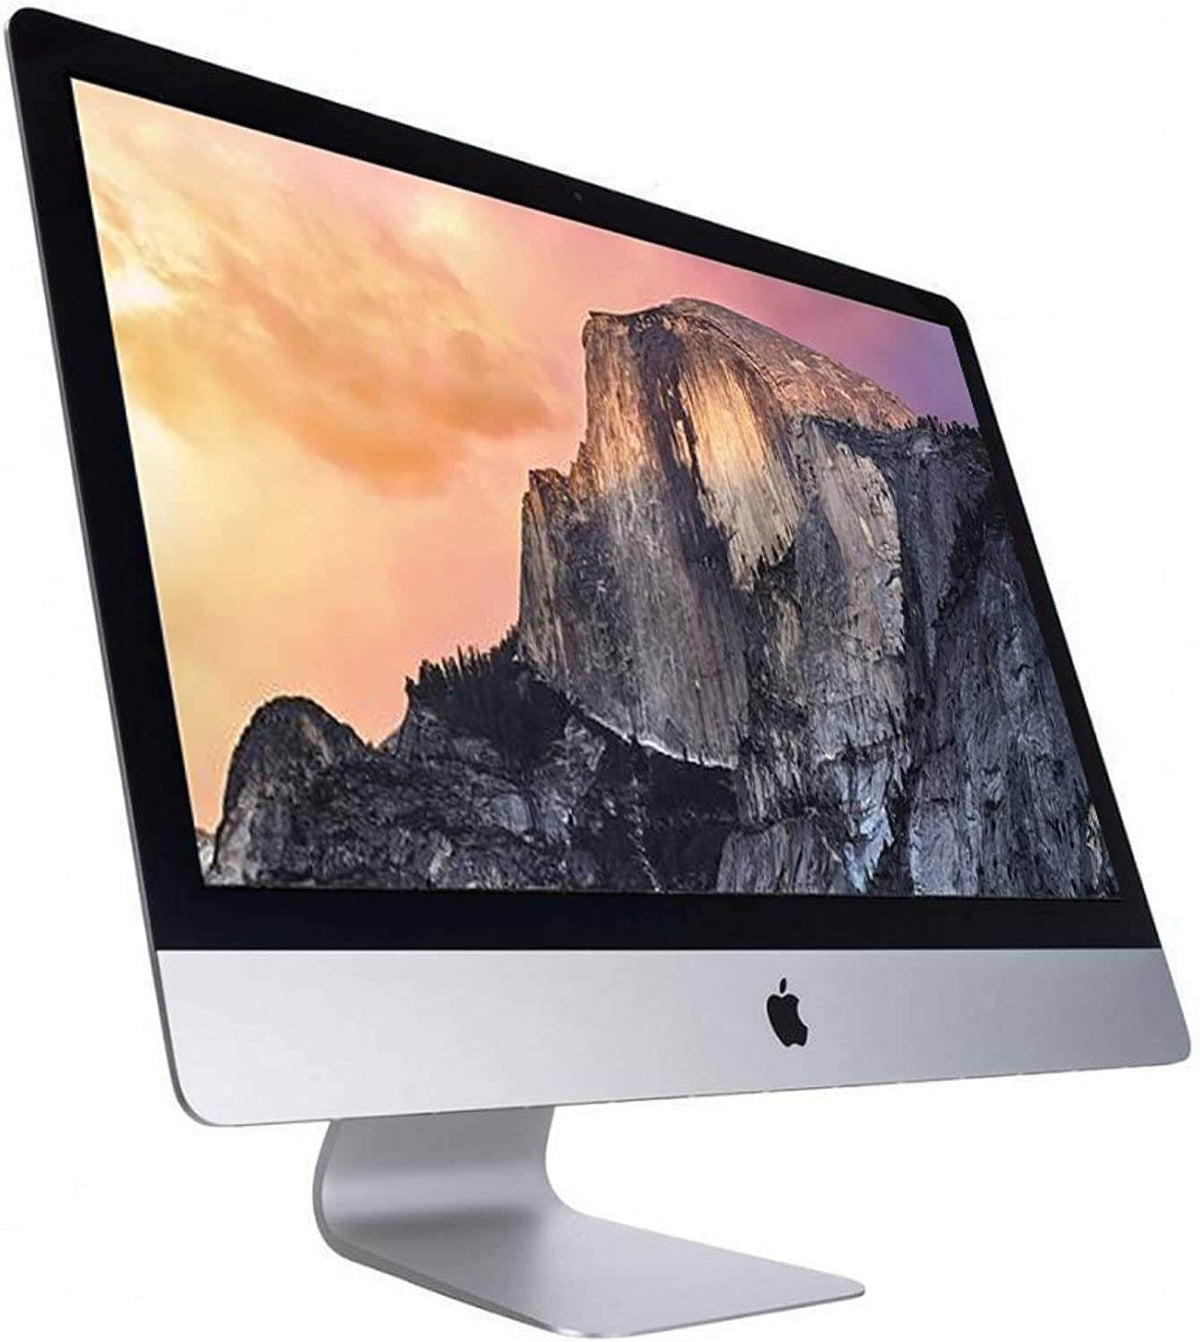 SmartTechShopping imac Apple iMac 21.5 in 2.7GHz Core i5 All In One Desktop